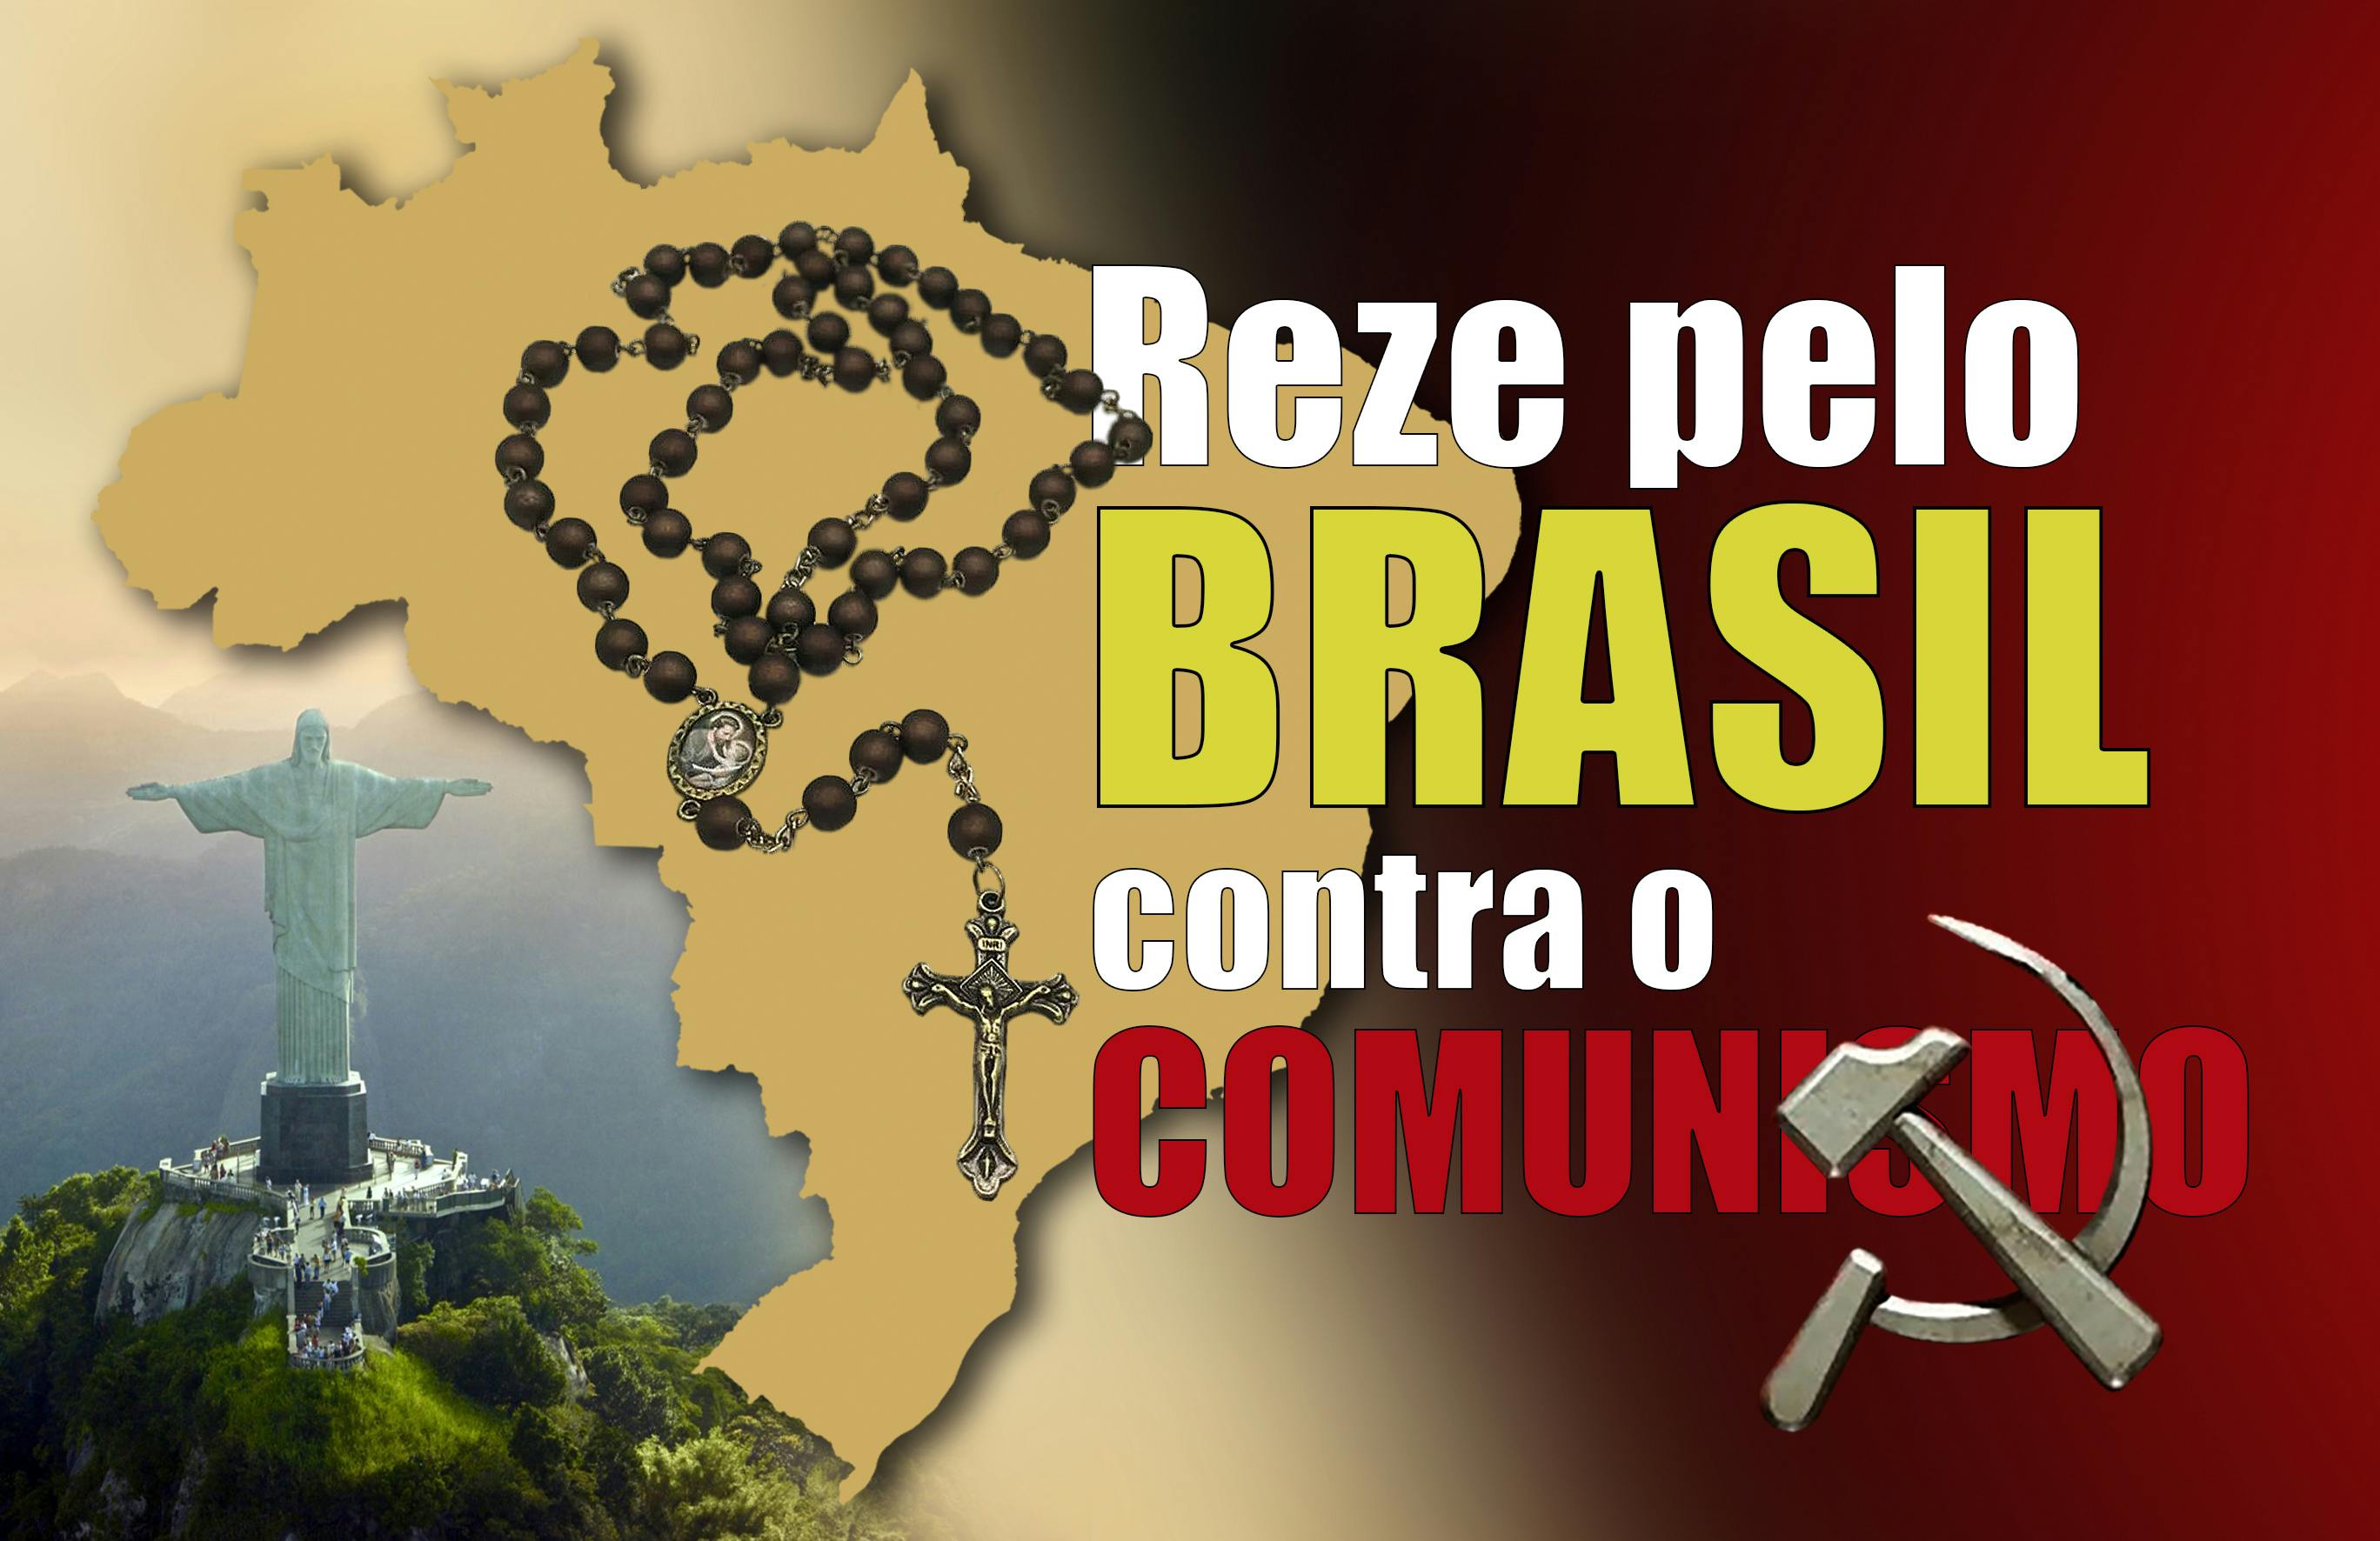 Mapa do Brasil com Cristo Redentor ao fundo. Rosário sobrepondo o símbolo do comunismo